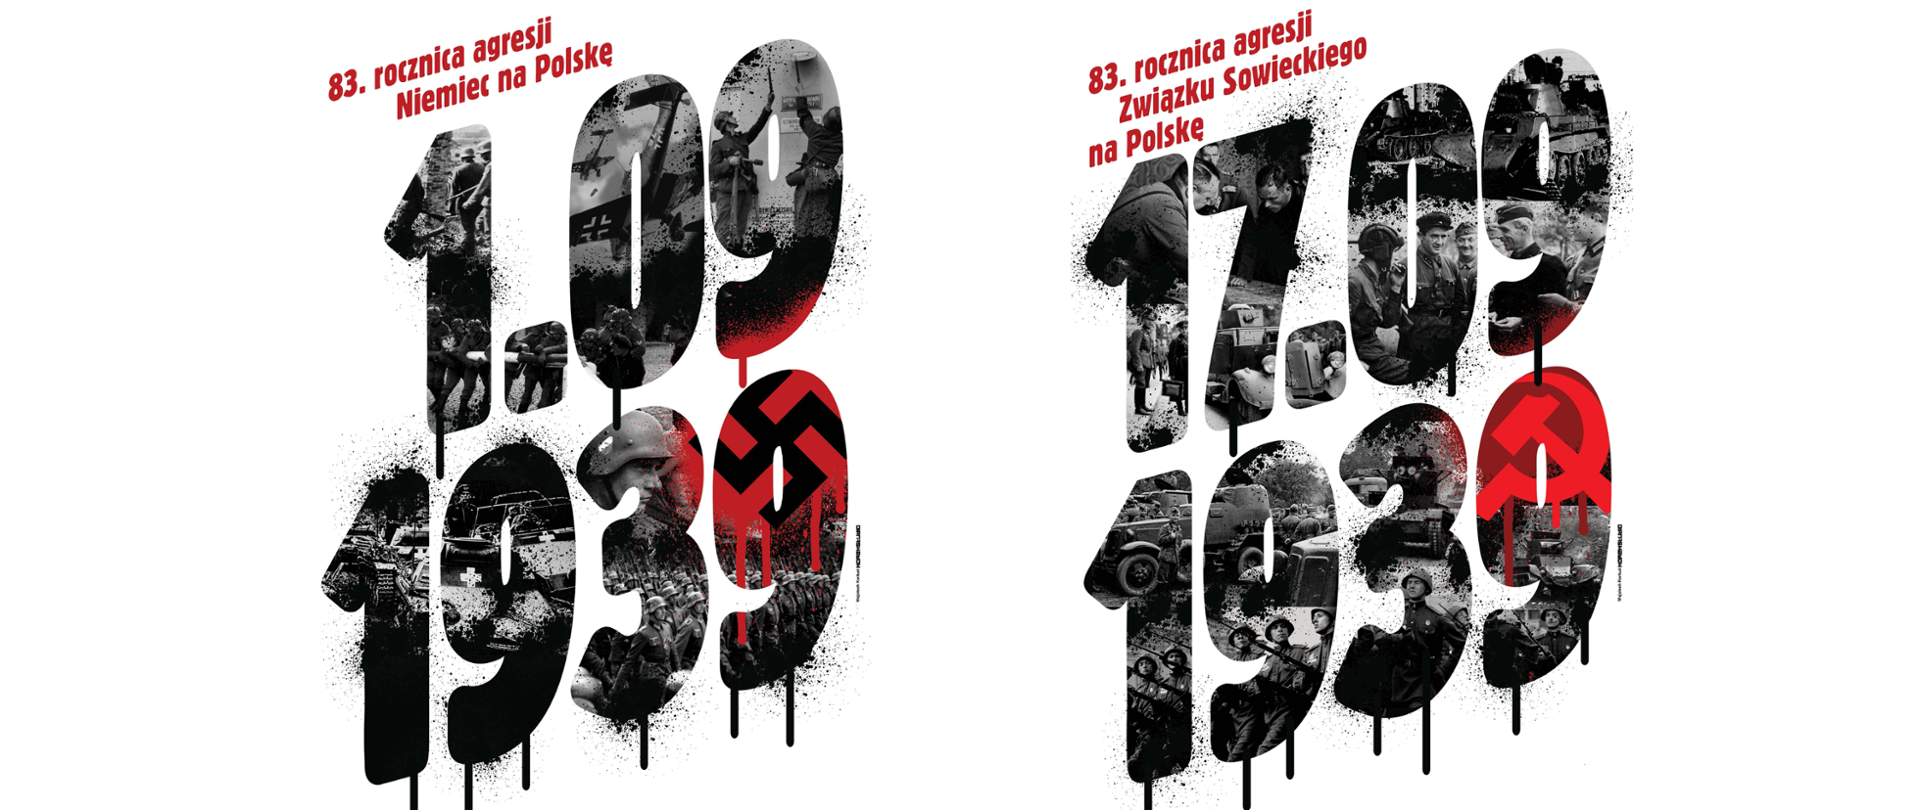 1 i 17 września - zapowiedź wydarzeń związanych z 83. rocznicą wybuchu II wojny światowej i sowieckiej agresji na Polskę